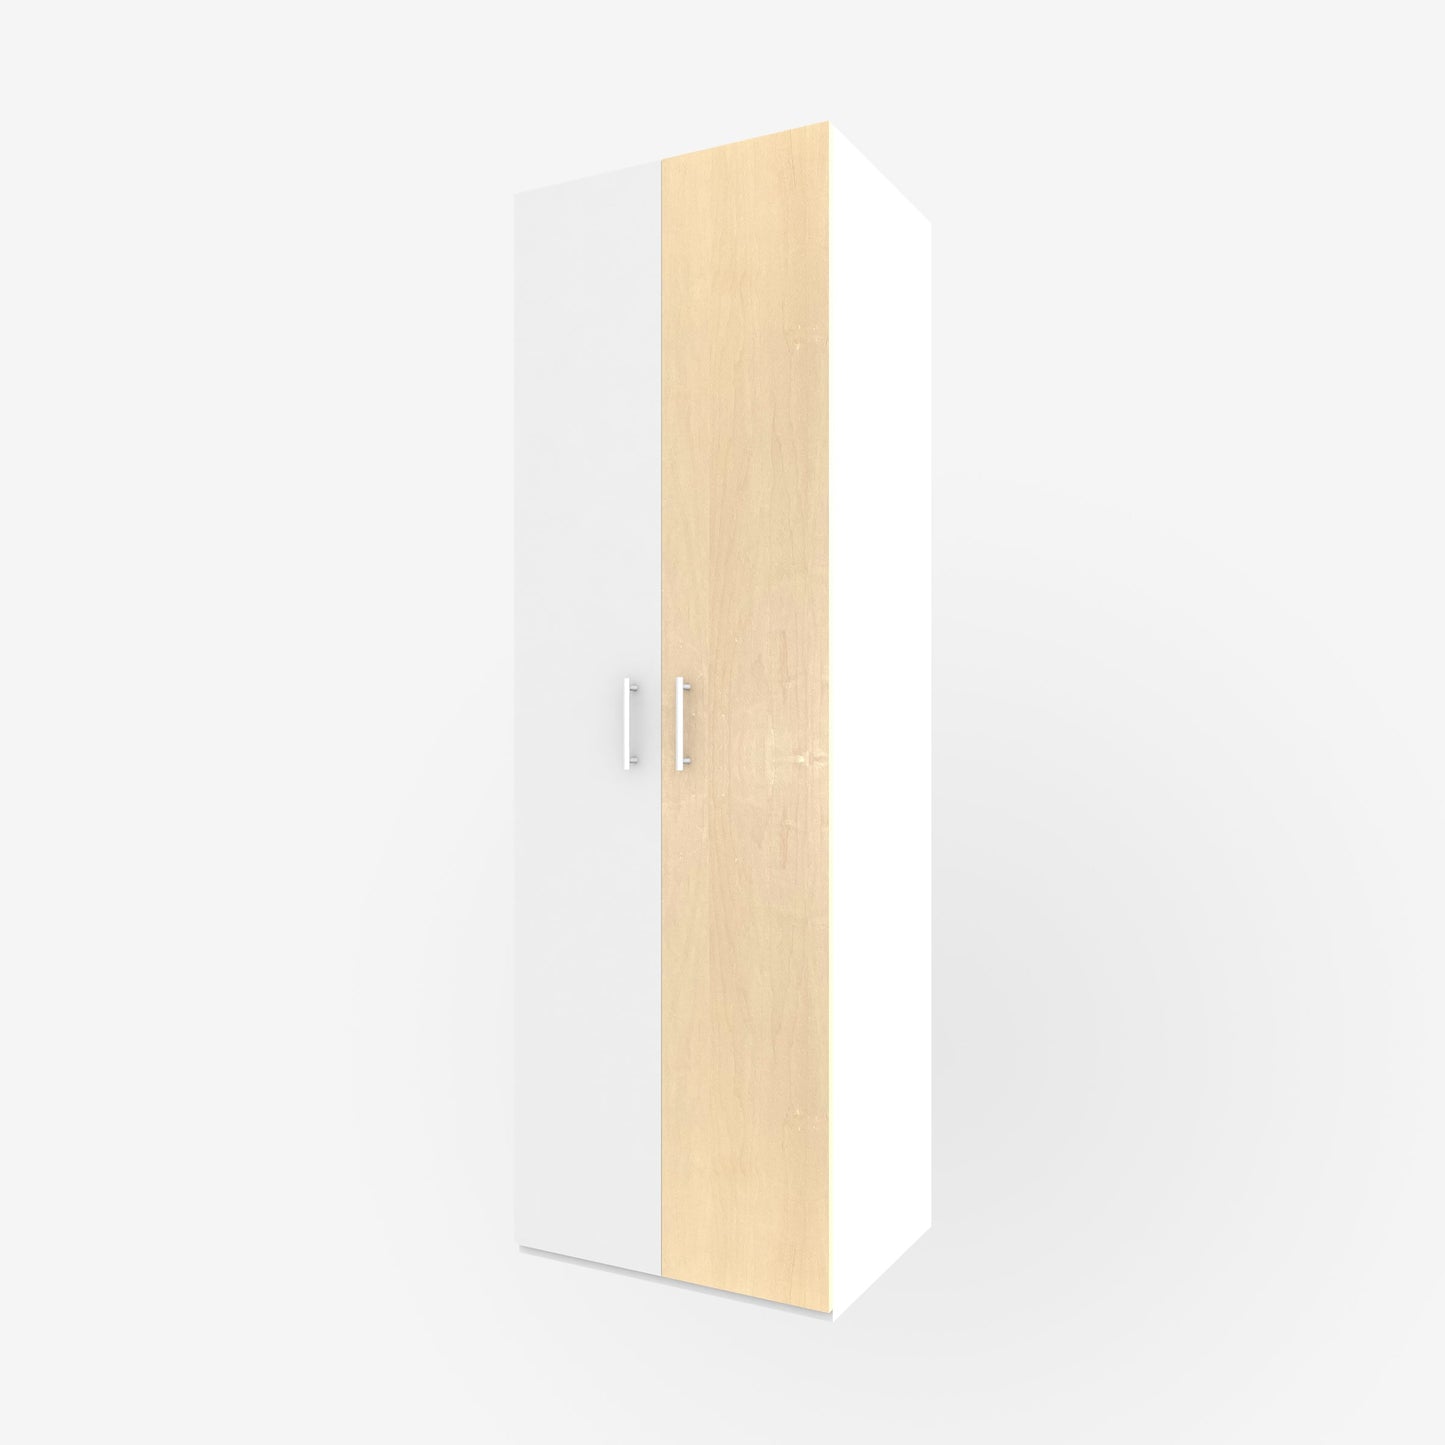 15" x 93" real wood veneer maple slab door for Ikea or Swedeboxx pax closet cabinet